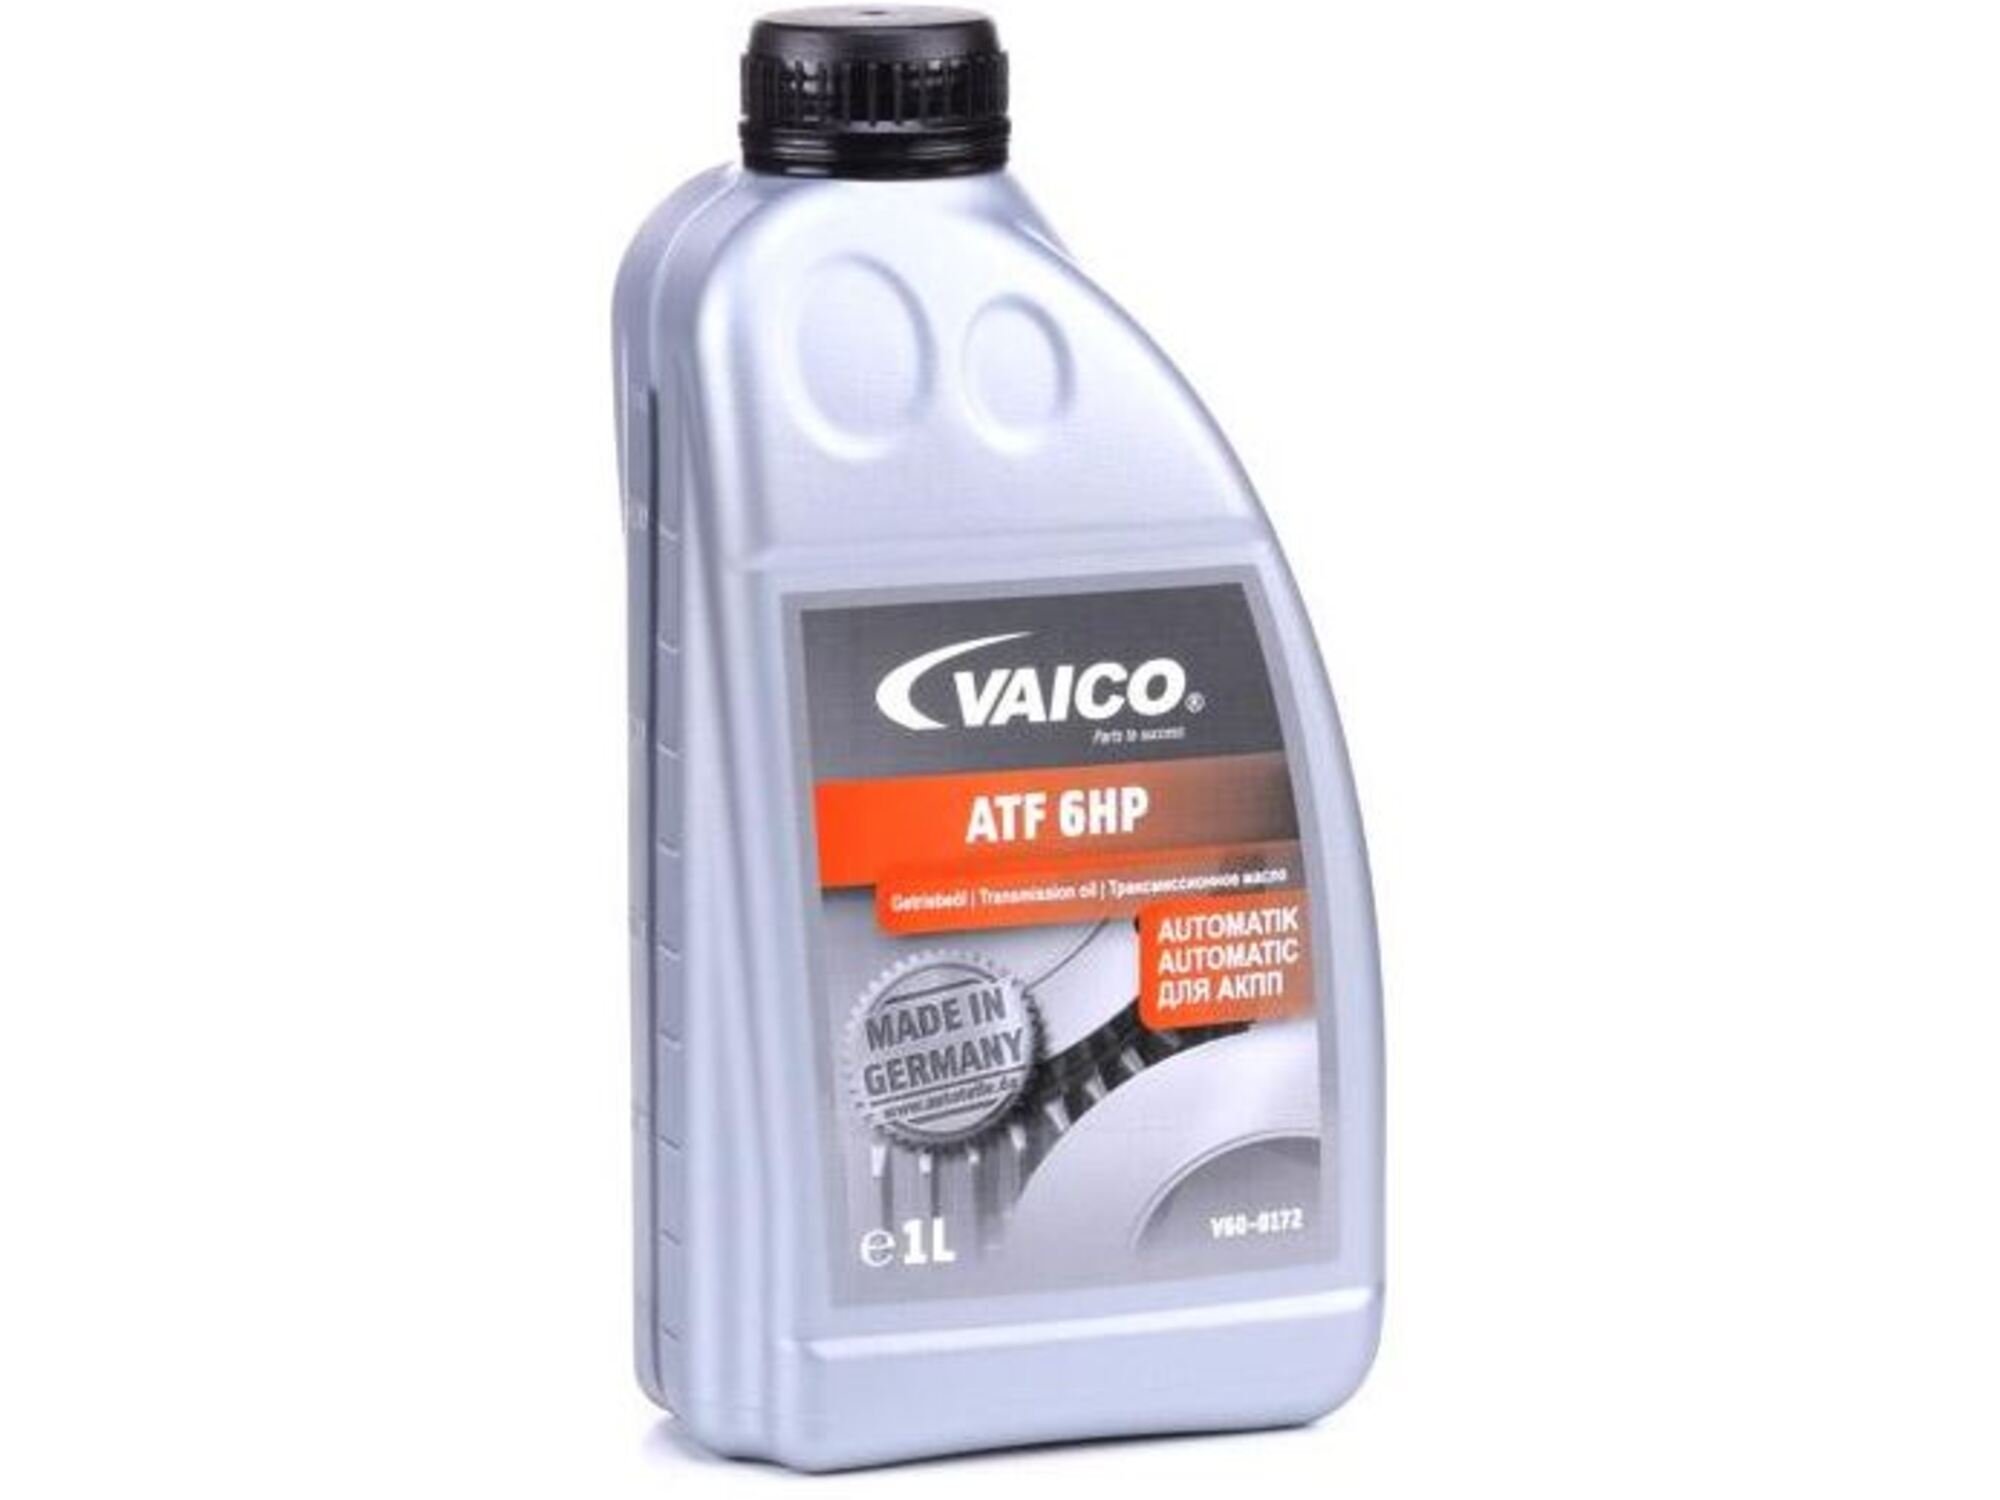 VAICO olje za avtomatski menjalnik ATF 6HP, 1L, V60-0172